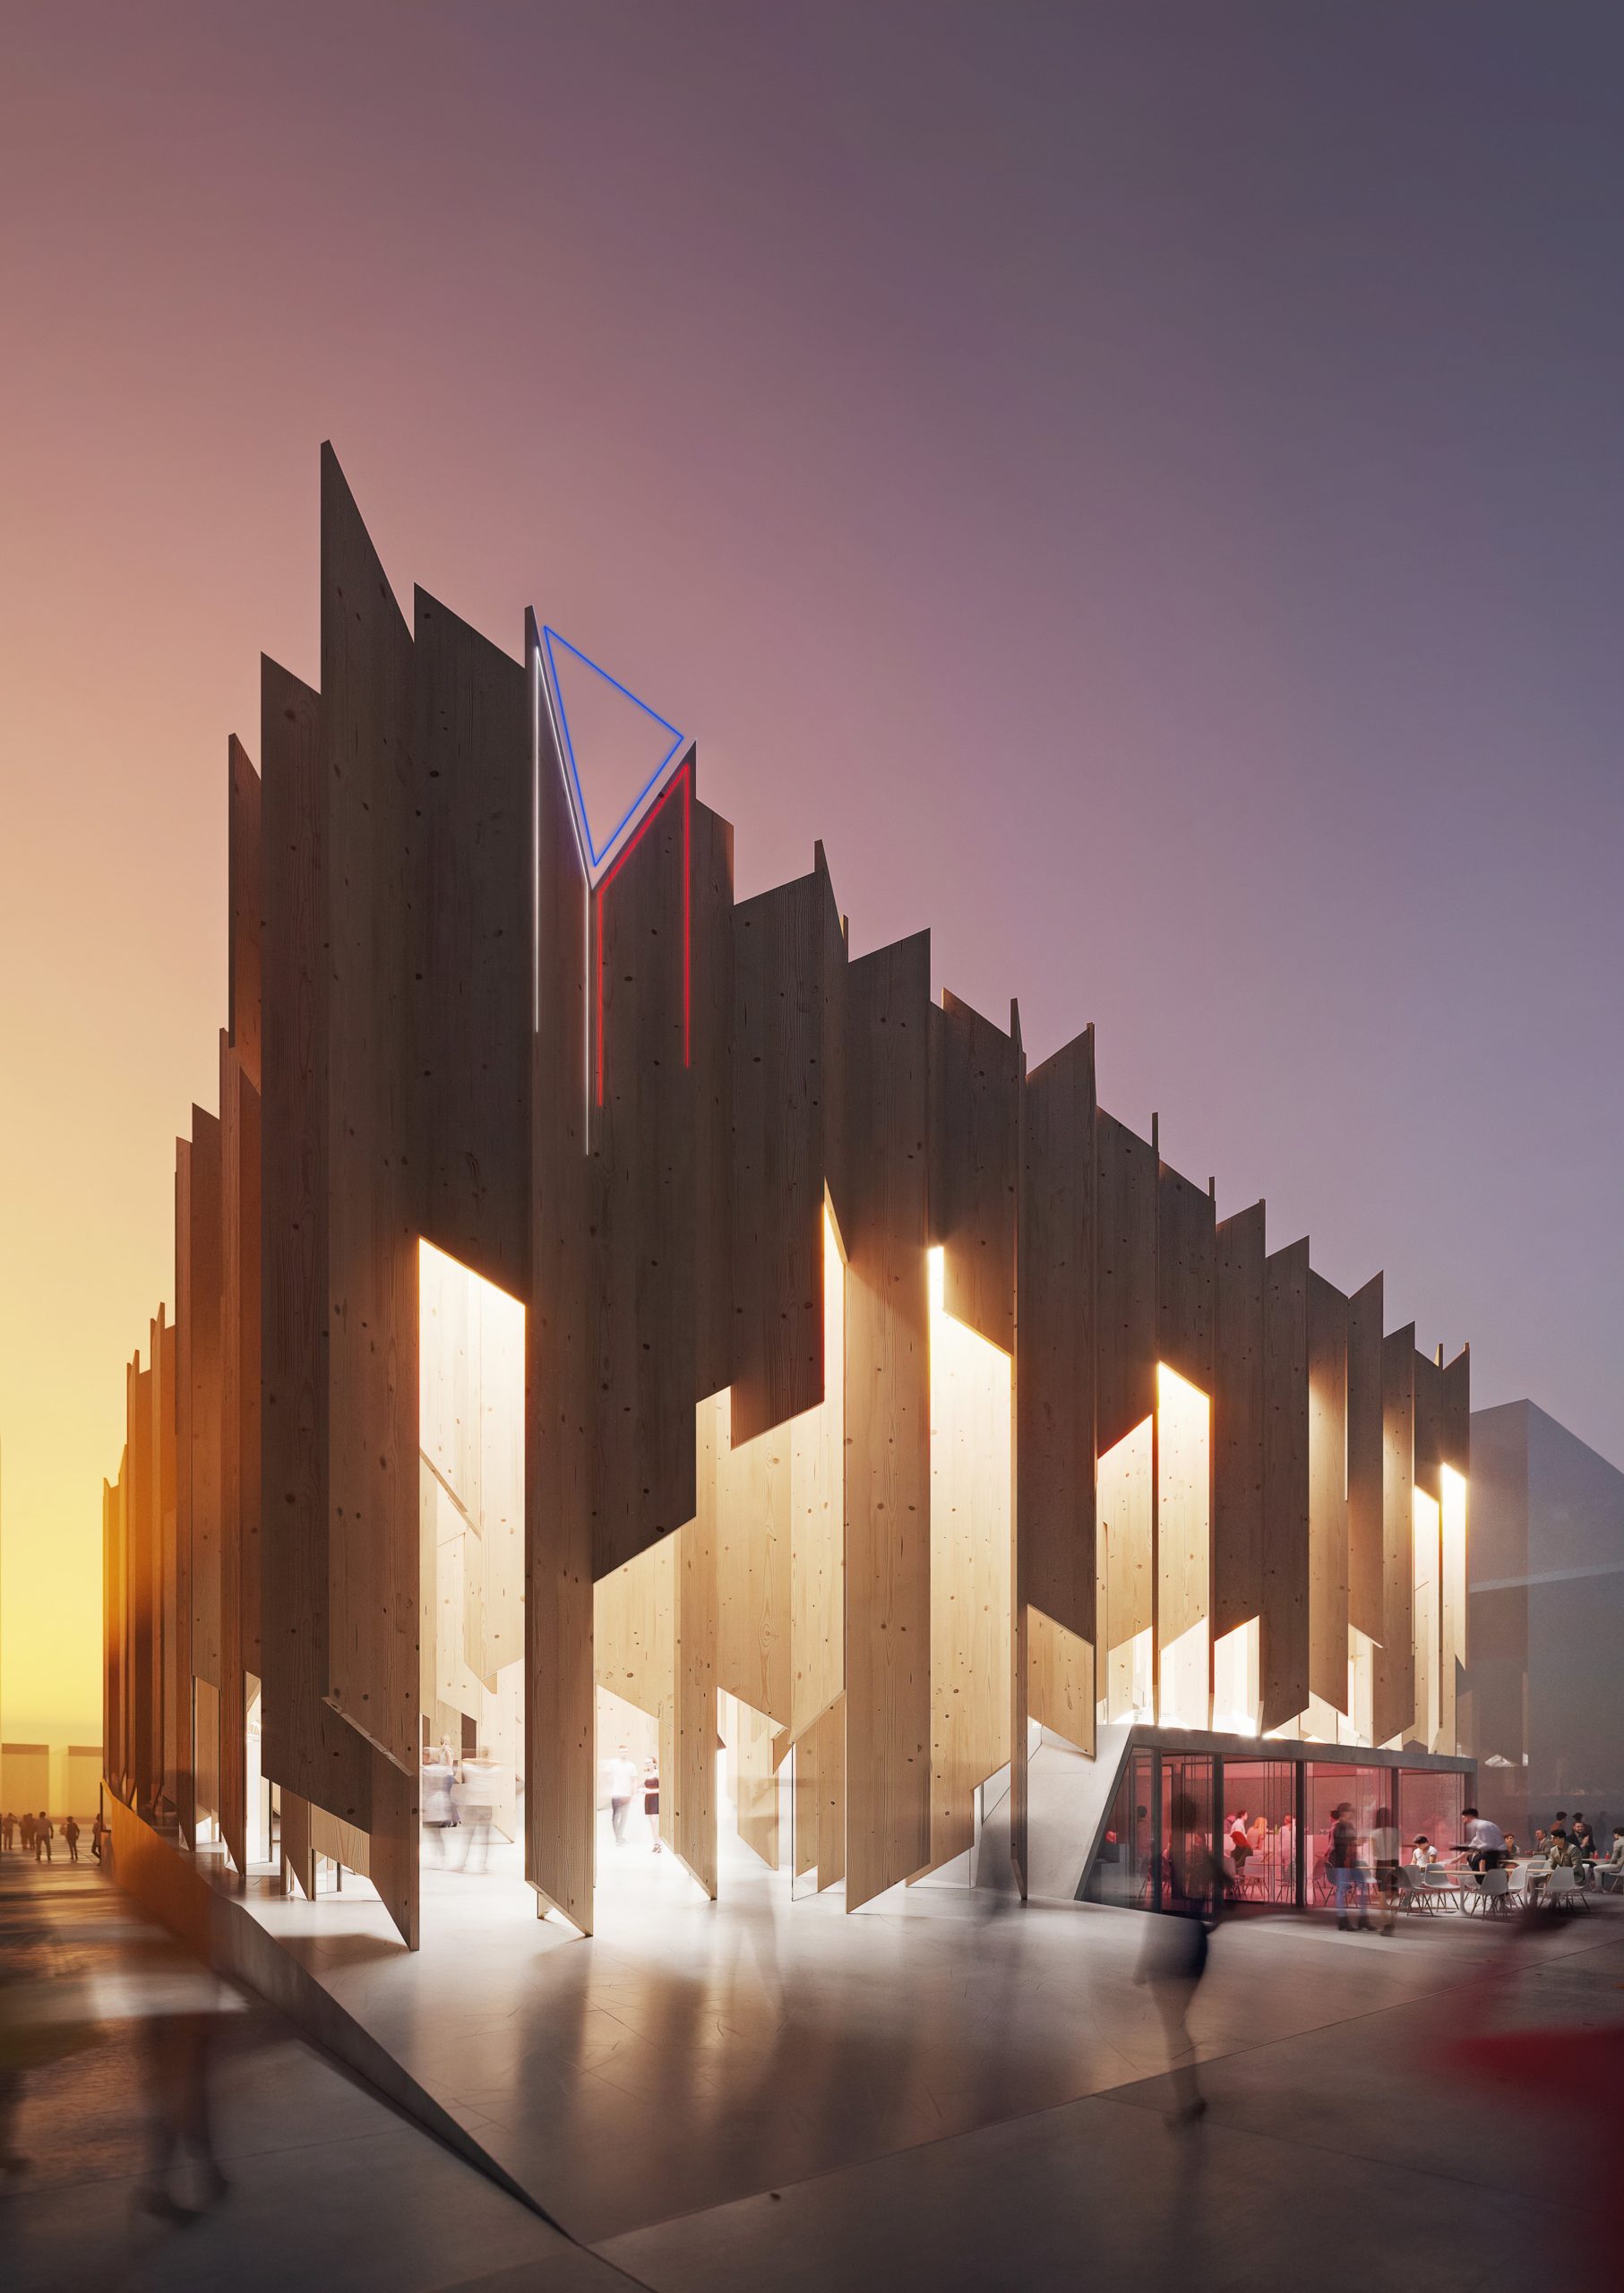 Návrh českého pavilonu pro mezinárodní výstavu EXPO 2025 - 2. místo